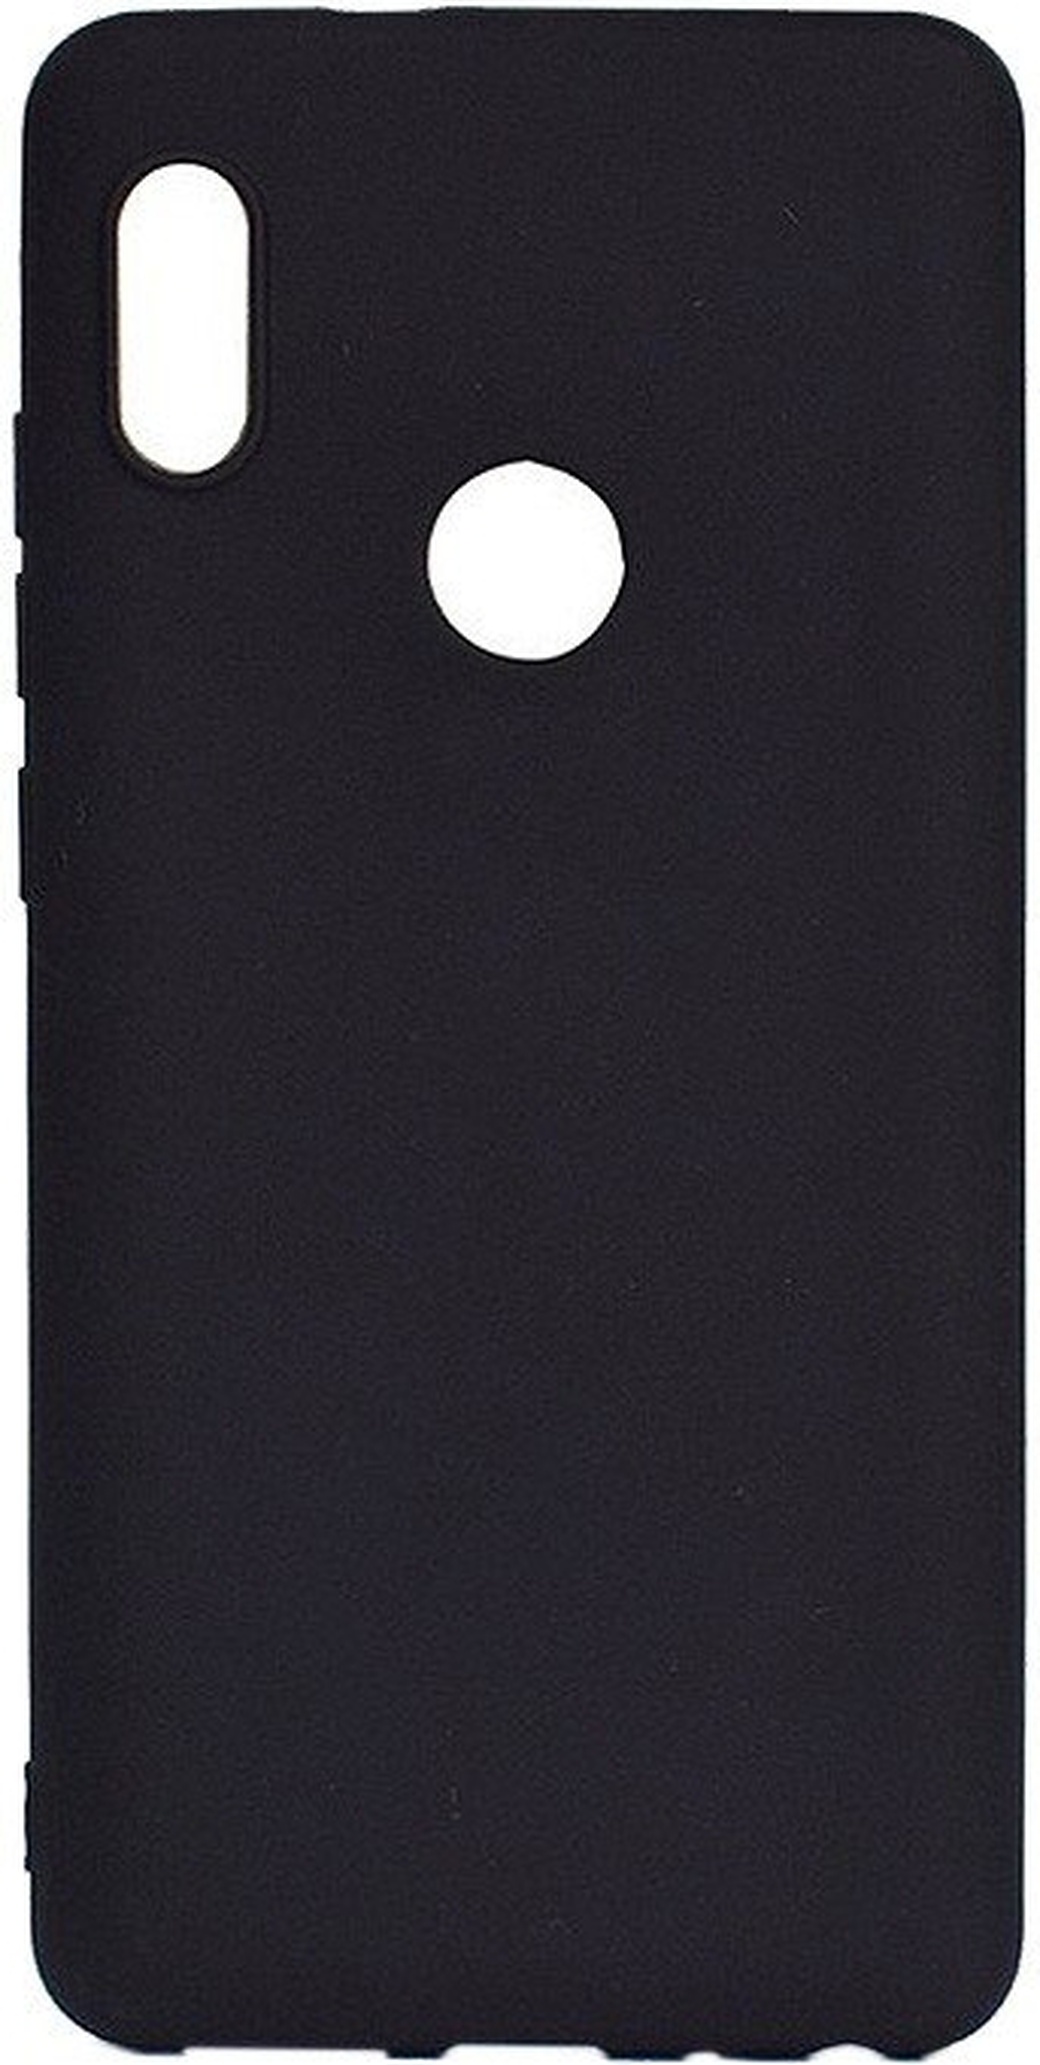 Чехол для смартфона Xiaomi Redmi 7 силиконовый черный, BoraSCO фото